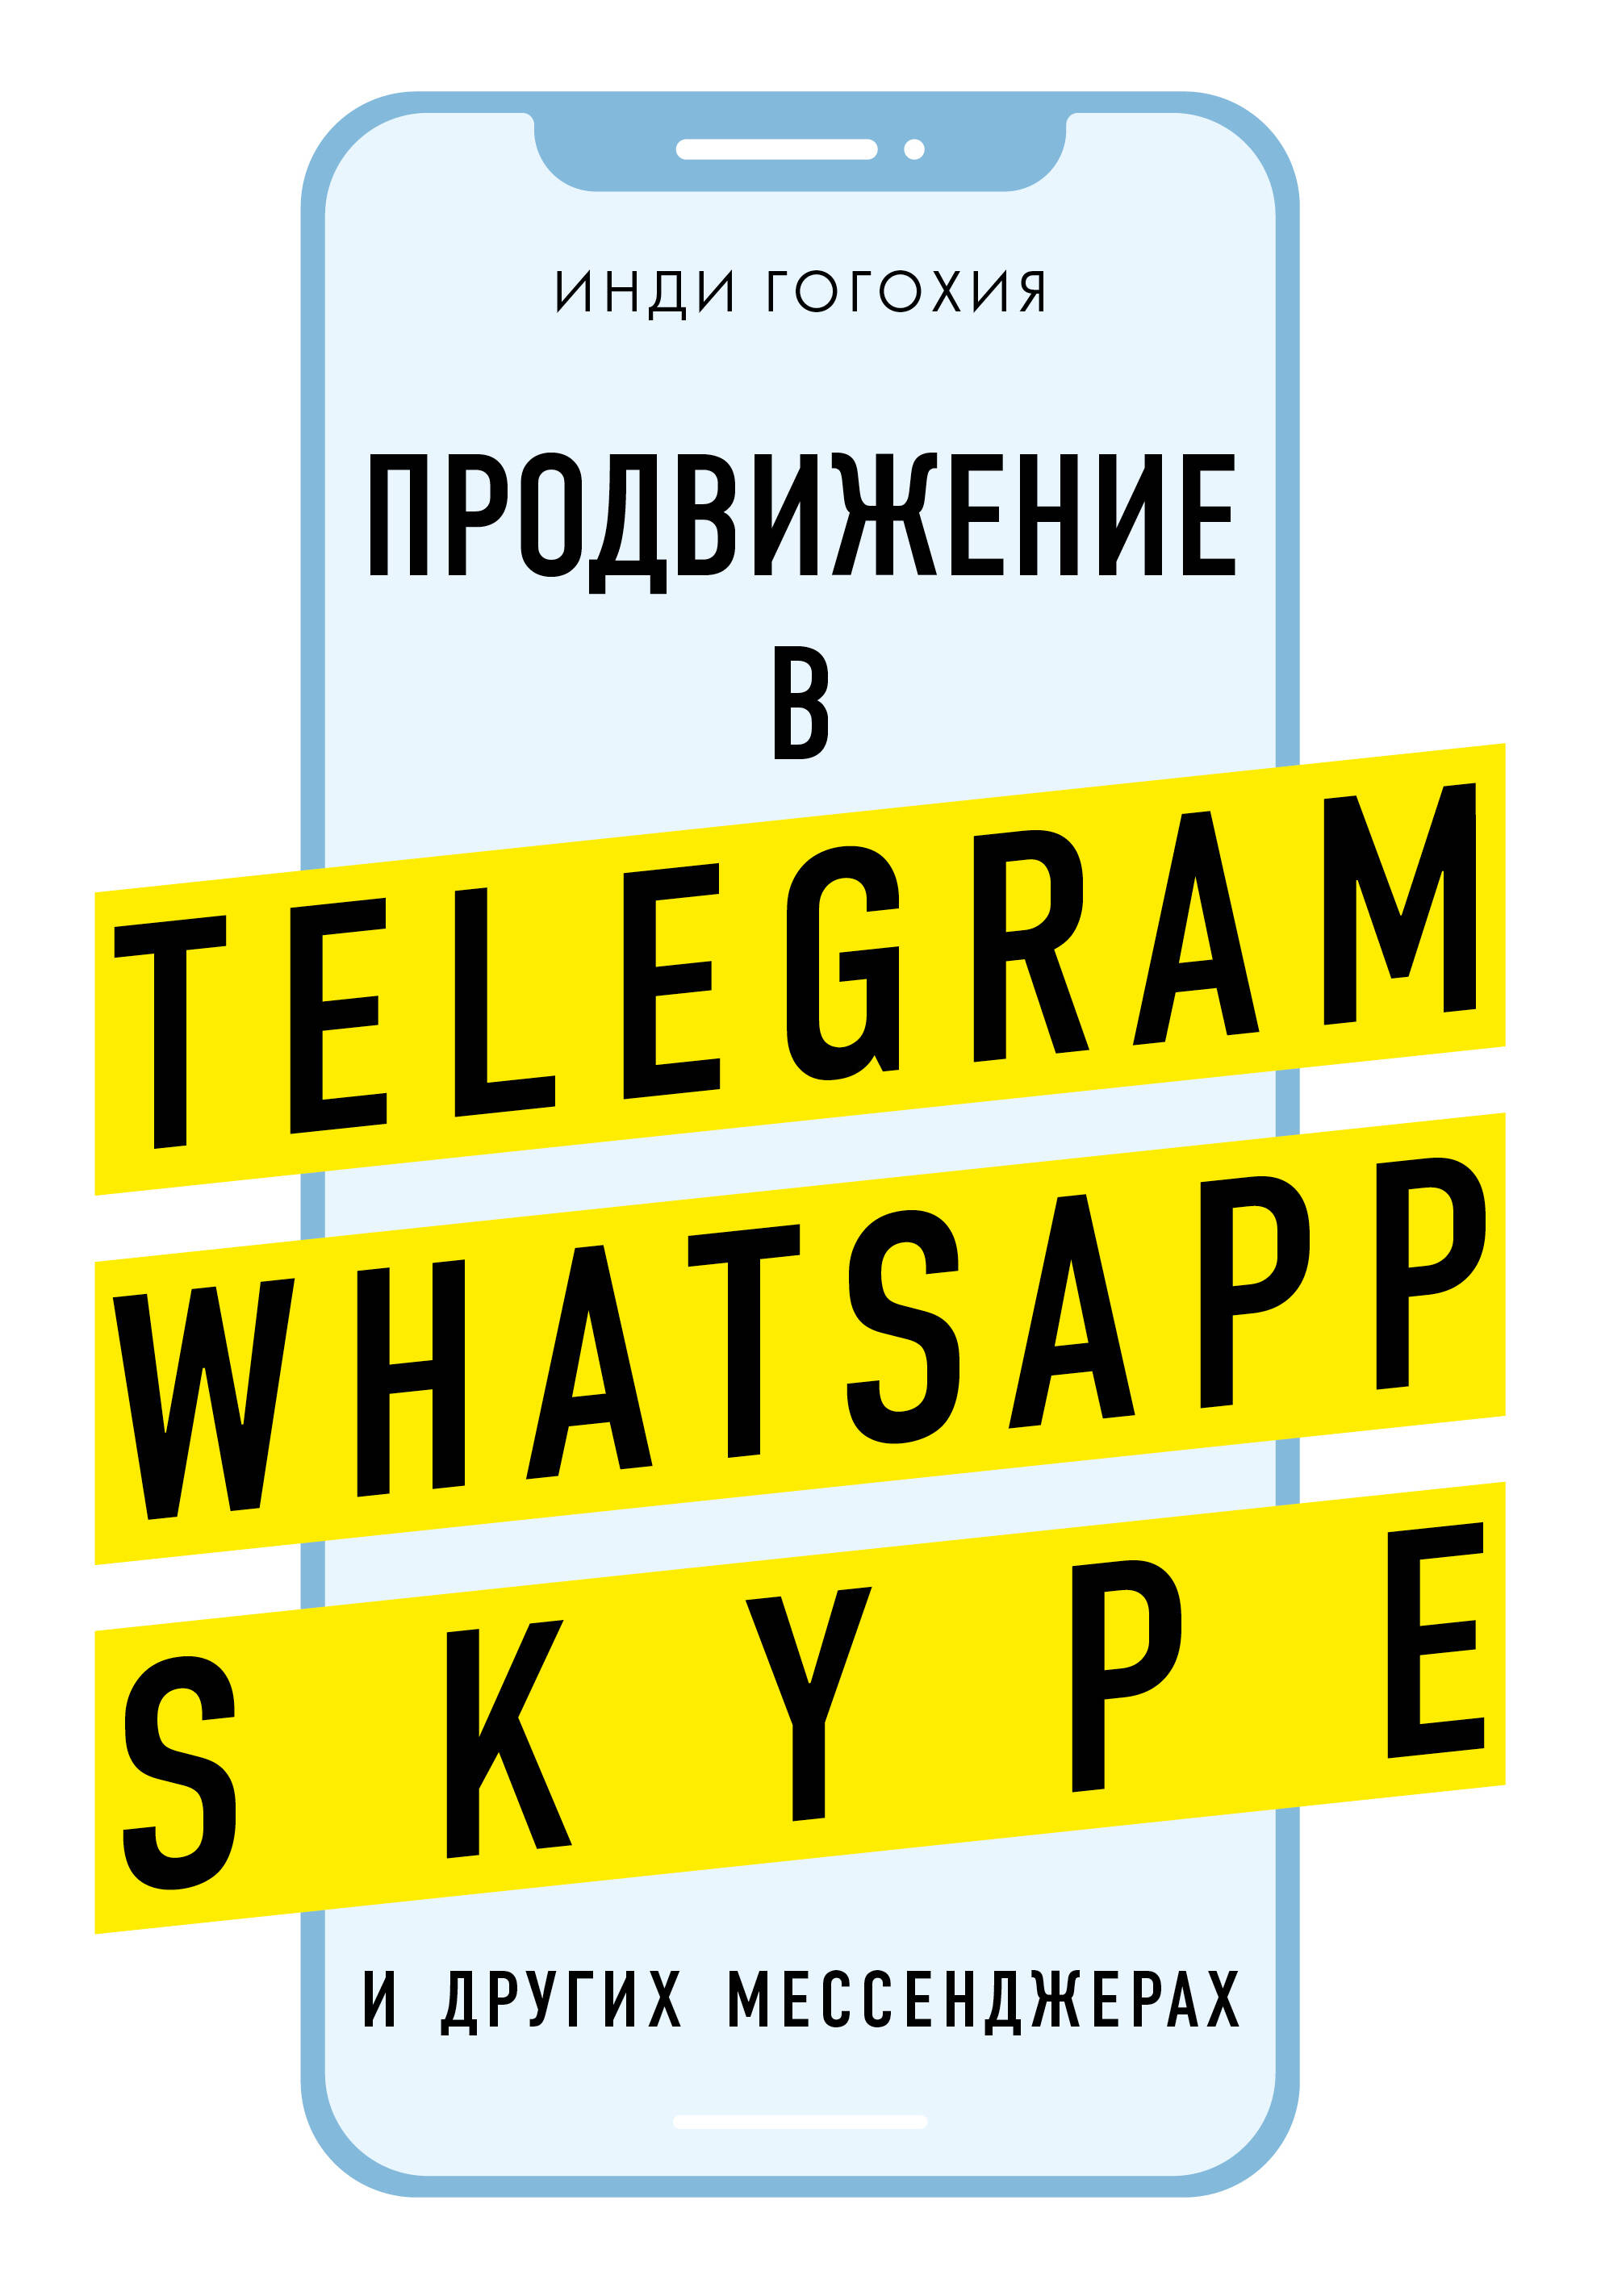    .   Telegram, WhatsApp, Skype   